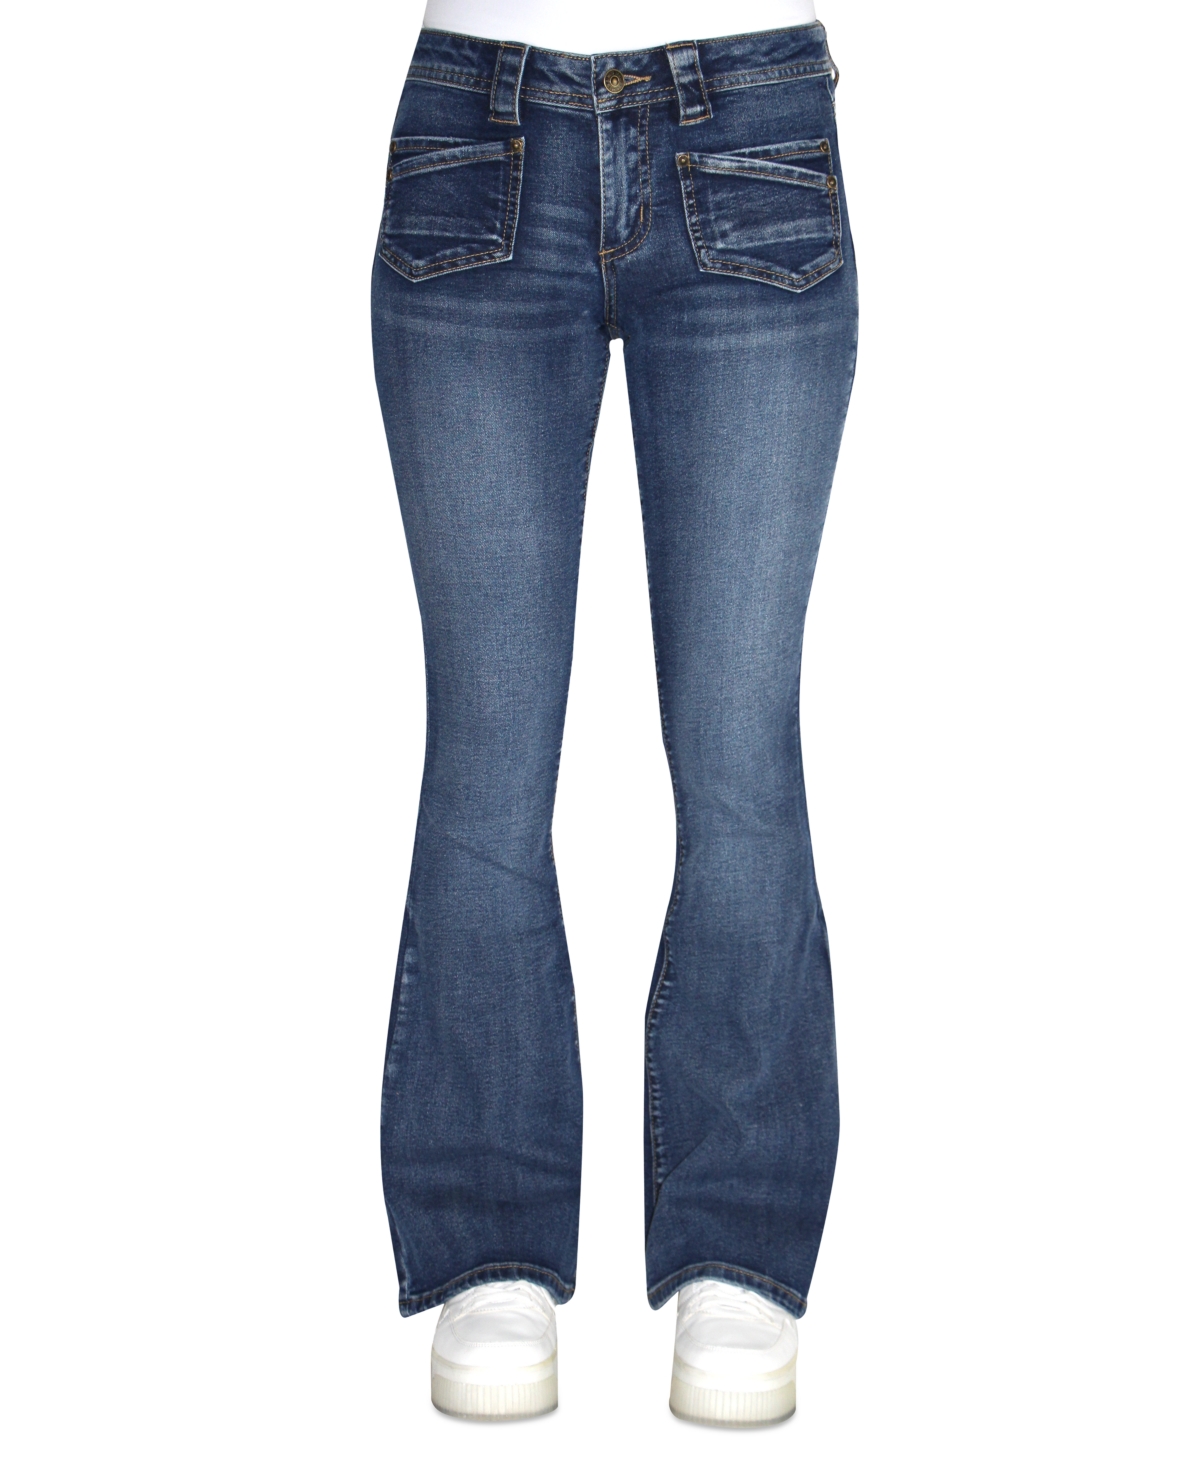 Crave Fame Juniors' Faded Patch-Pocket Flare-Leg Denim Jeans - Dark Wash